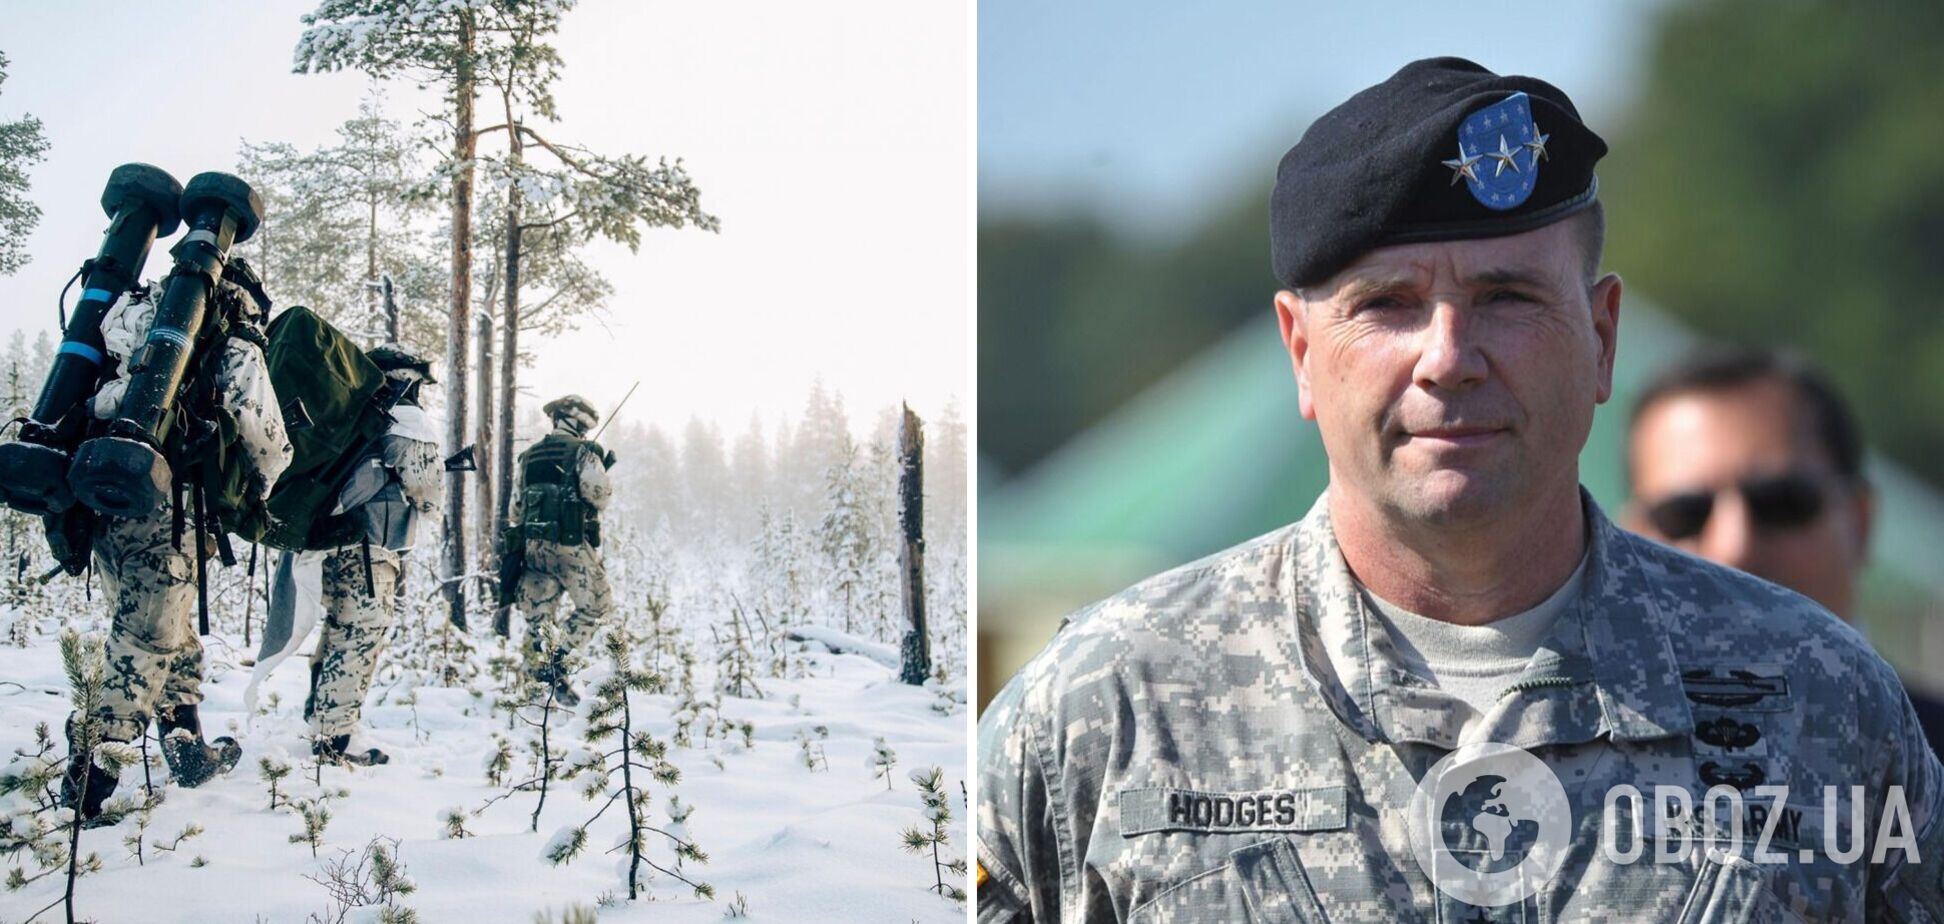 ВСУ продолжат давление на оккупантов, но темпы наступления замедлятся: генерал Ходжес о ситуации на фронте в Украине зимой